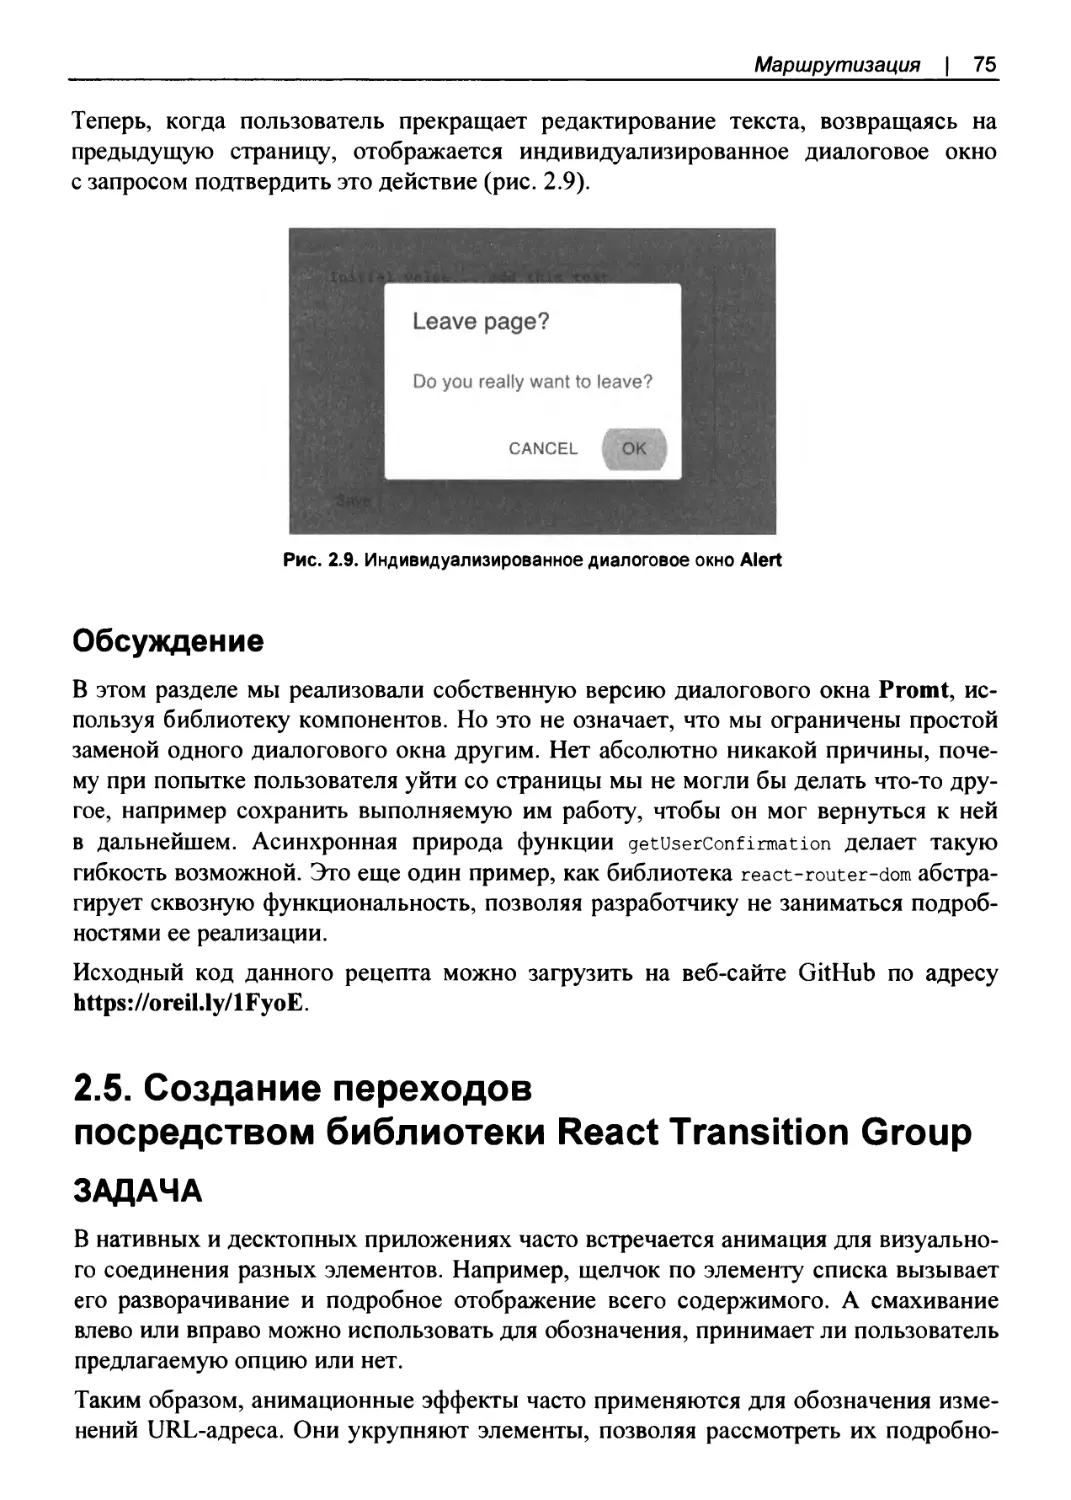 Обсуждение
2.5. Создание переходов посредством библиотеки React Transition Group